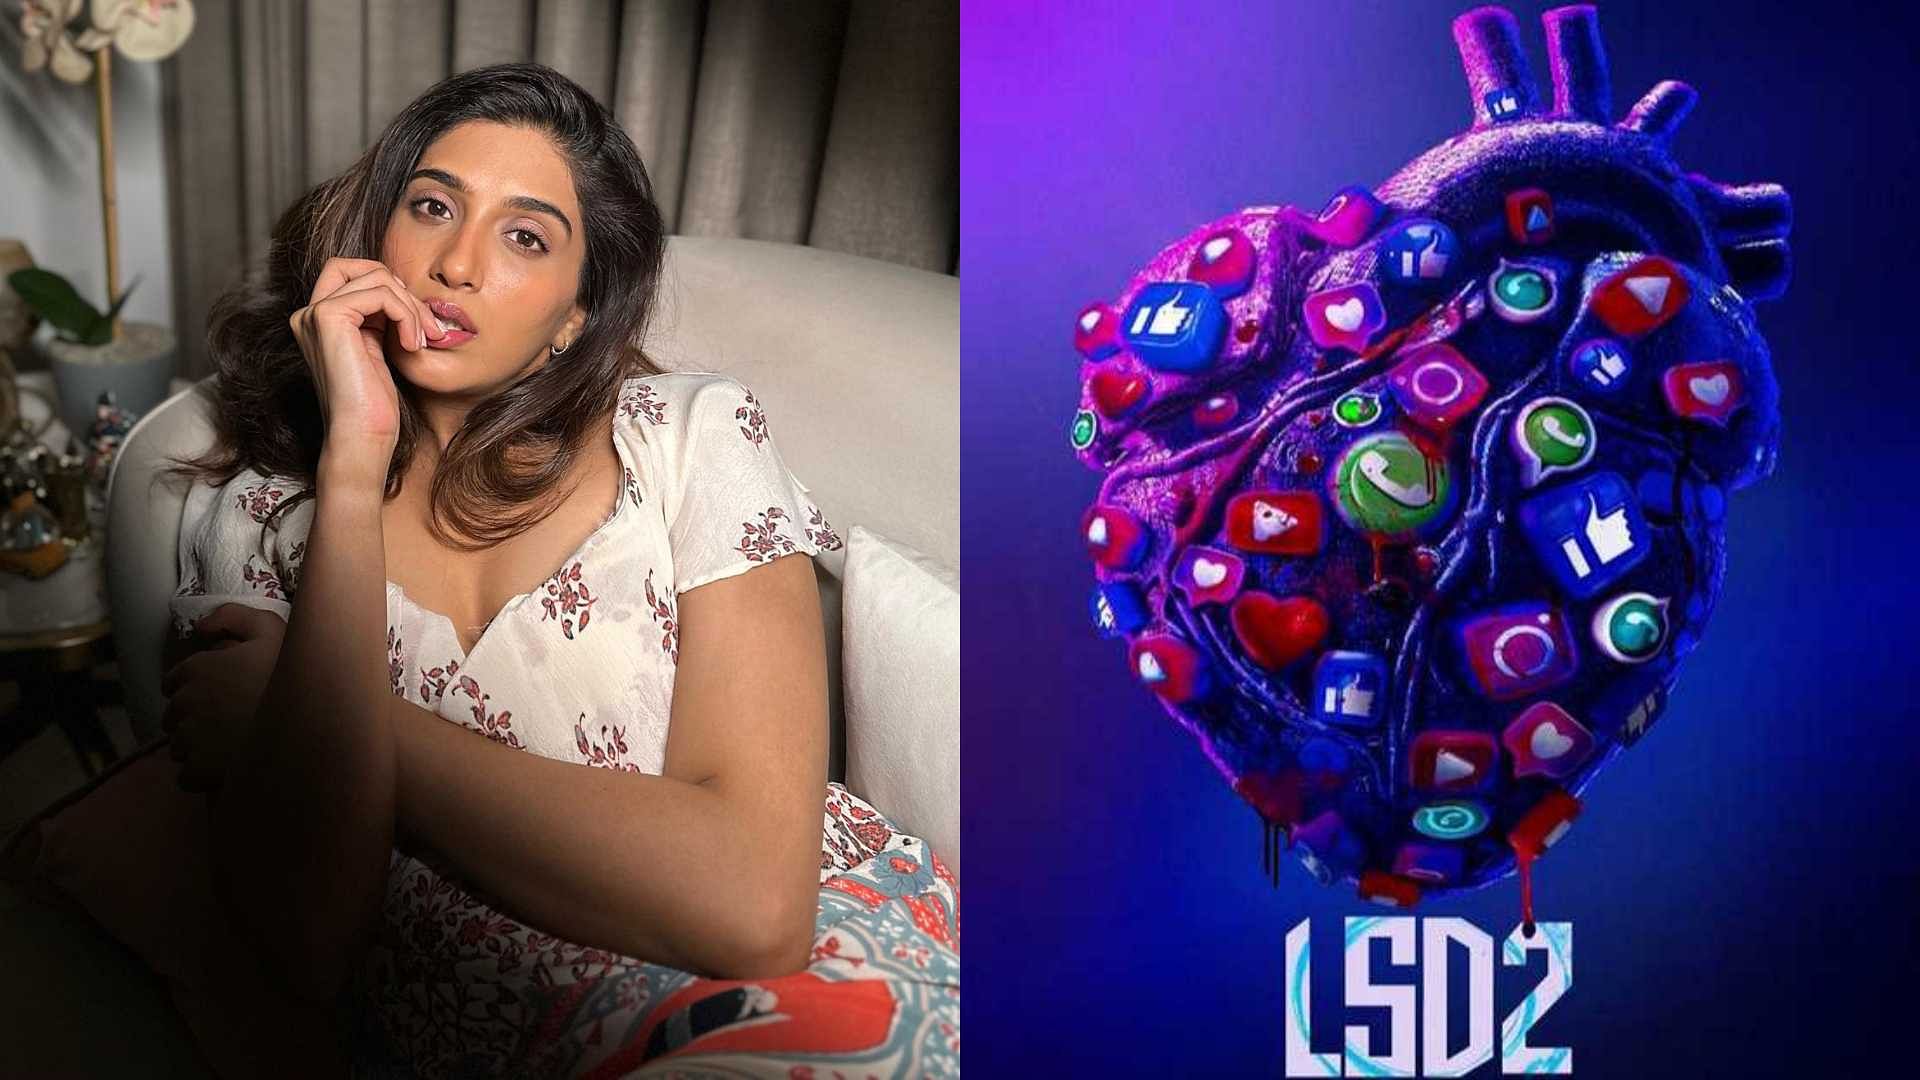 लव सेक्स और धोखा 2 के डायरेक्टर दिबाकर बनर्जी ने LSD 2 को बताया LSD 1 से बिल्कुल अलग, बताई दिलचस्प बात